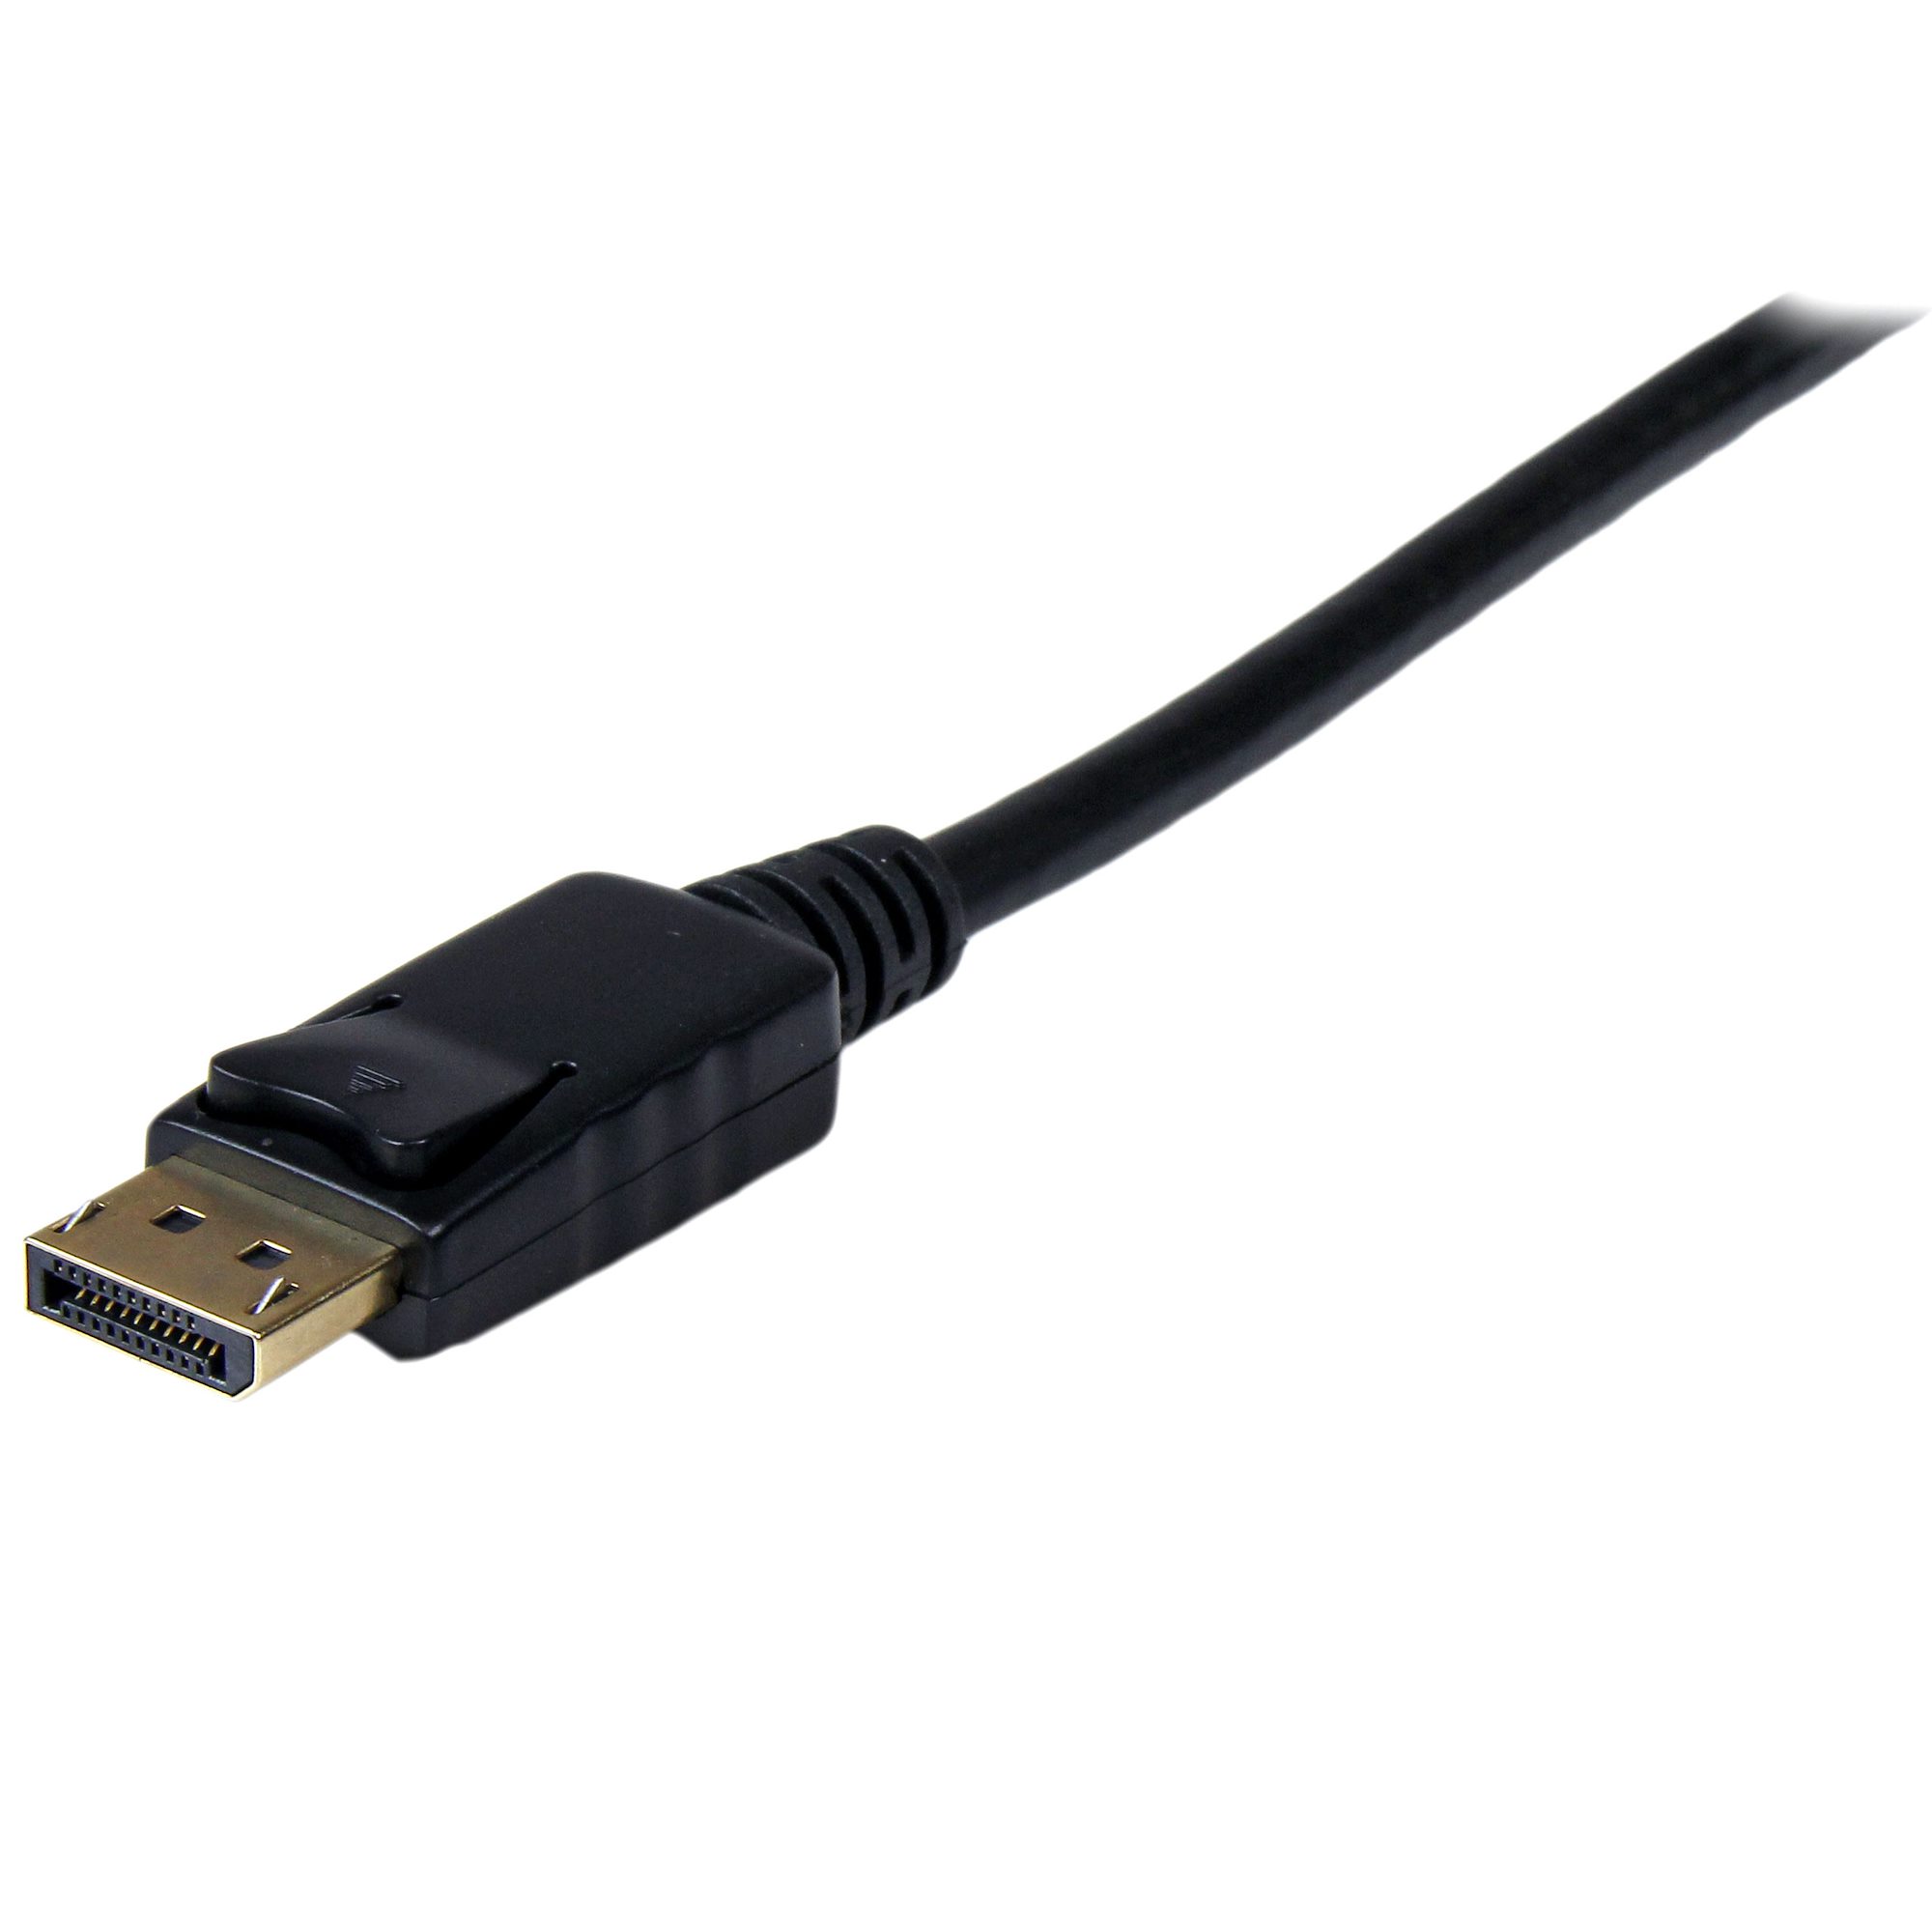 Cable DisplayPort a VGA 1,8m Chapado en Oro ,FOINNEX DP 1.2 a VGA Cable Soporta transmisión de Video 1080P@60Hz,para conectar Lenovo,DELL,HP,ASUS Ordenador a Monitor,Proyector,TV,Hombre a Hombre. 